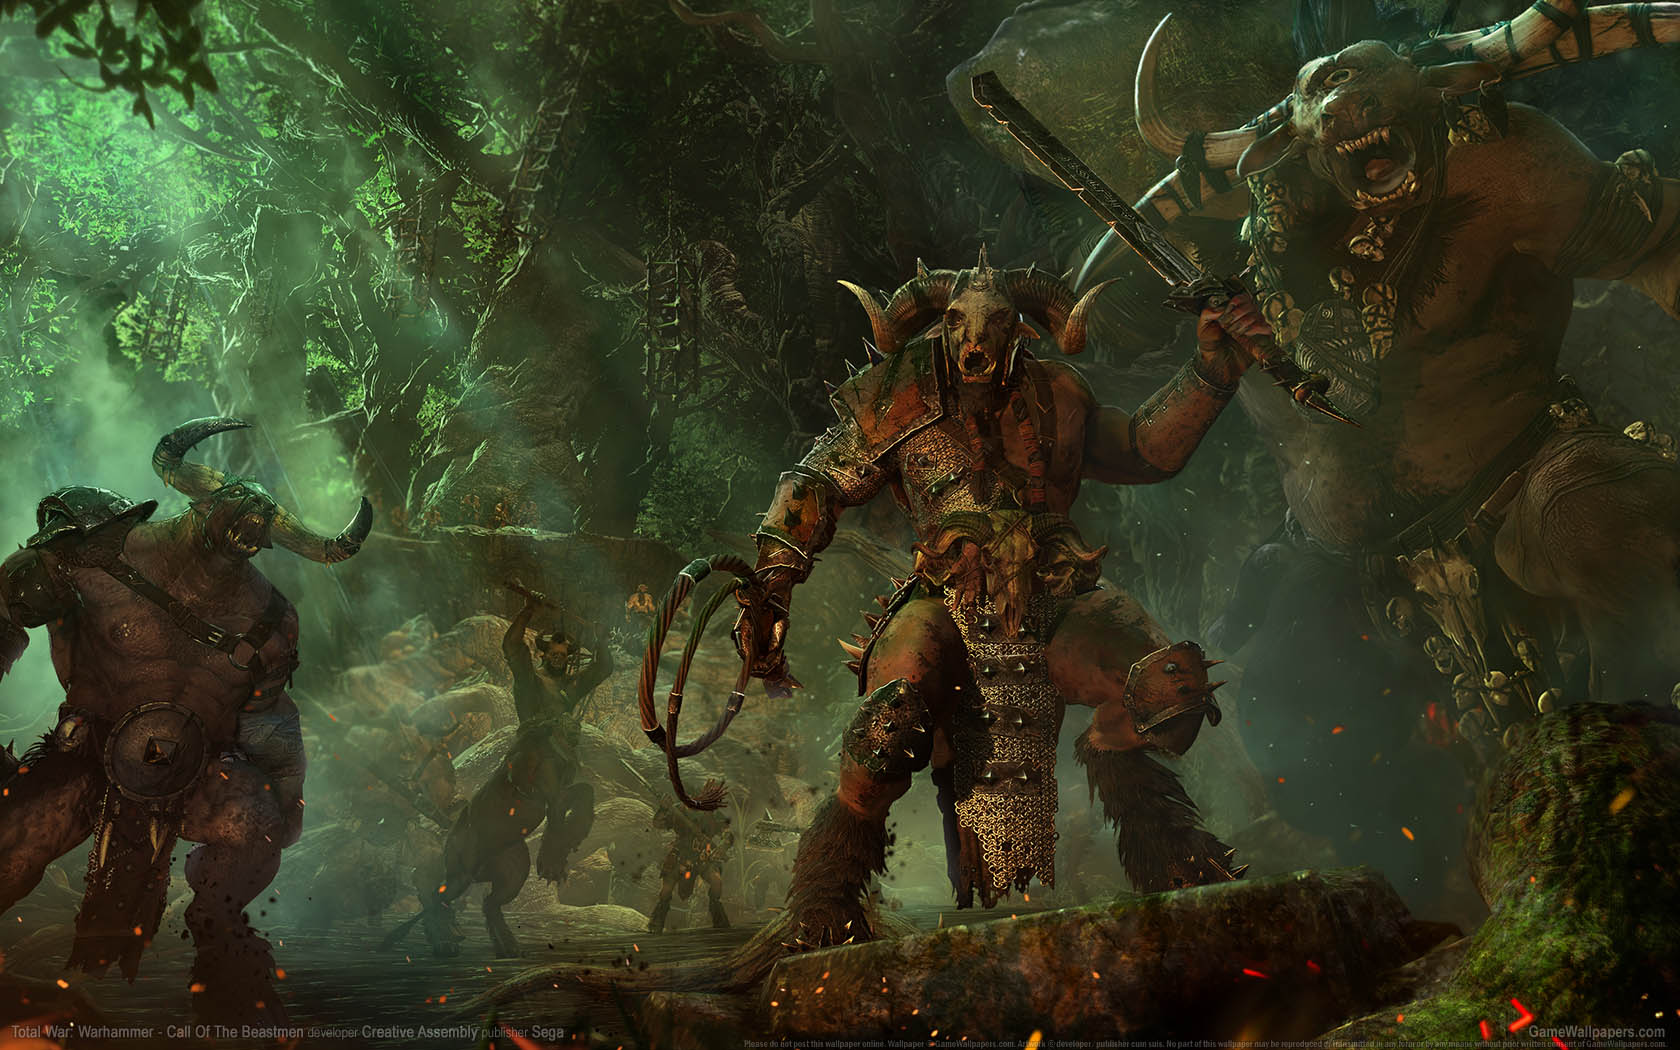 Total War: Warhammer - Call of the Beastmen fond d'cran 01 1680x1050